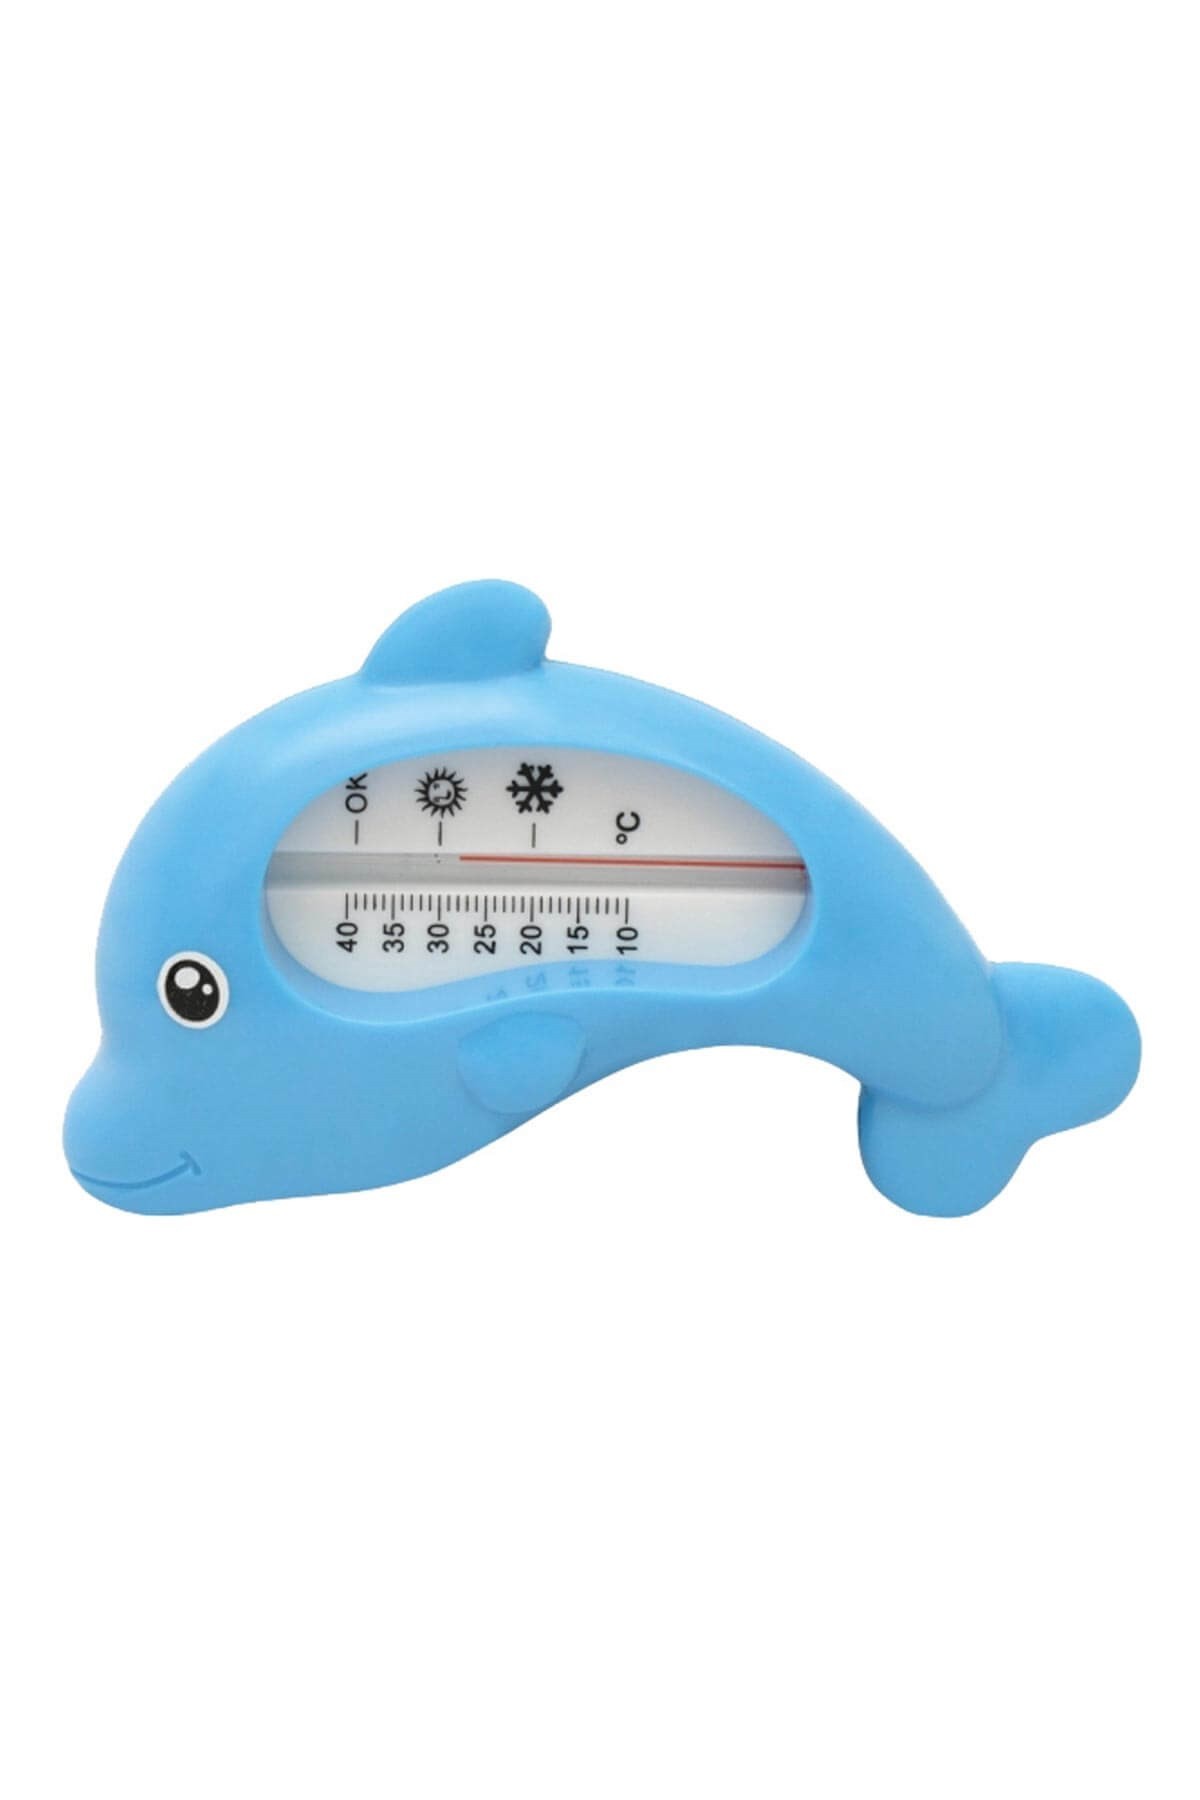 Weewell WTB101 Banyo Termometresi Mavi